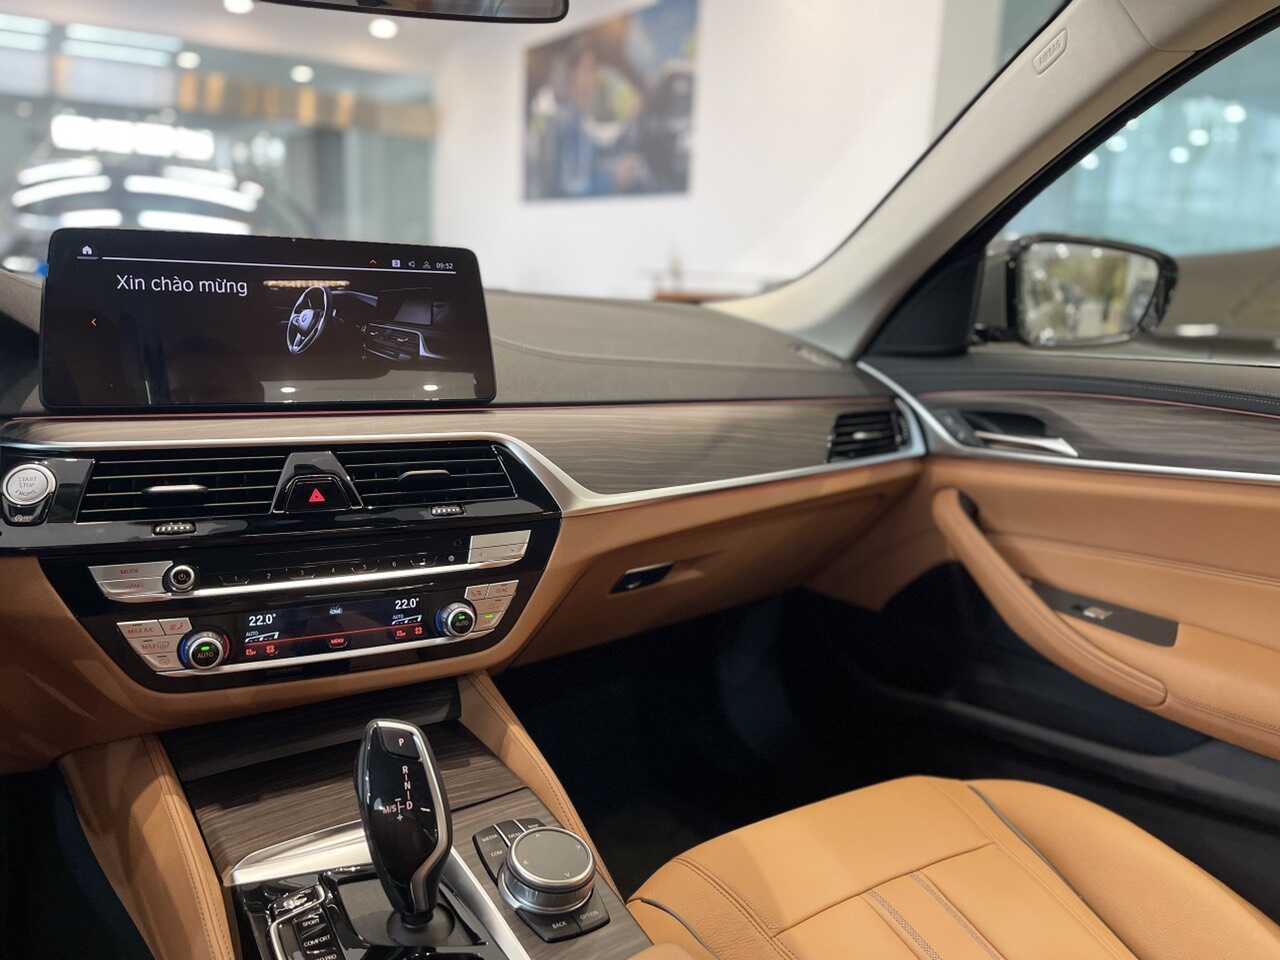 Cần số và nút điều khiển đa phương tiện Idrive trên BMW 520i luxury.